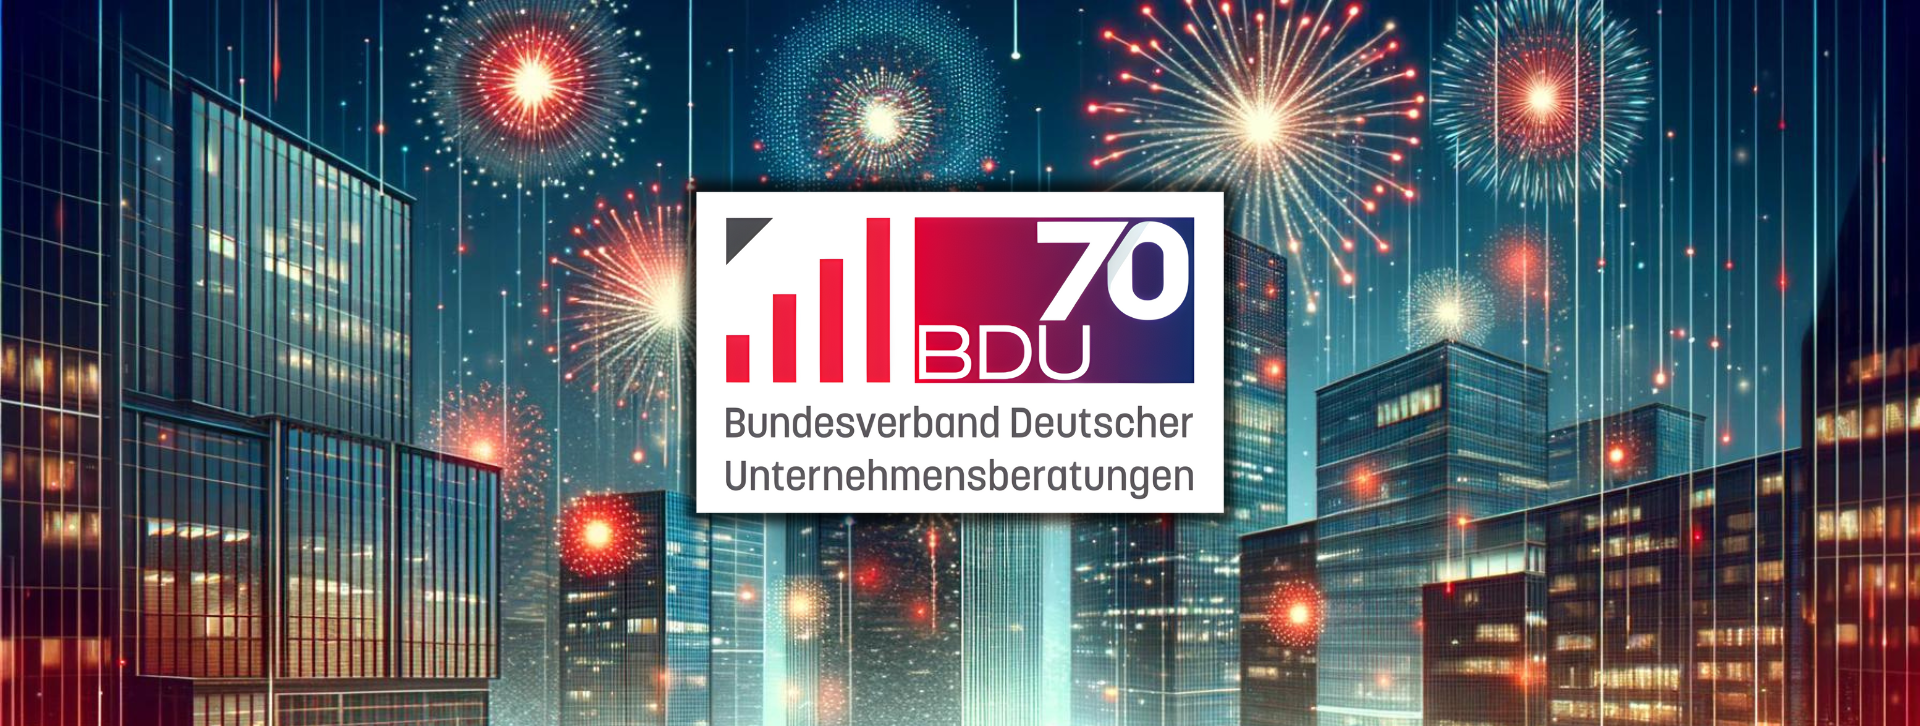 BDU feiert 70jähriges Bestehen